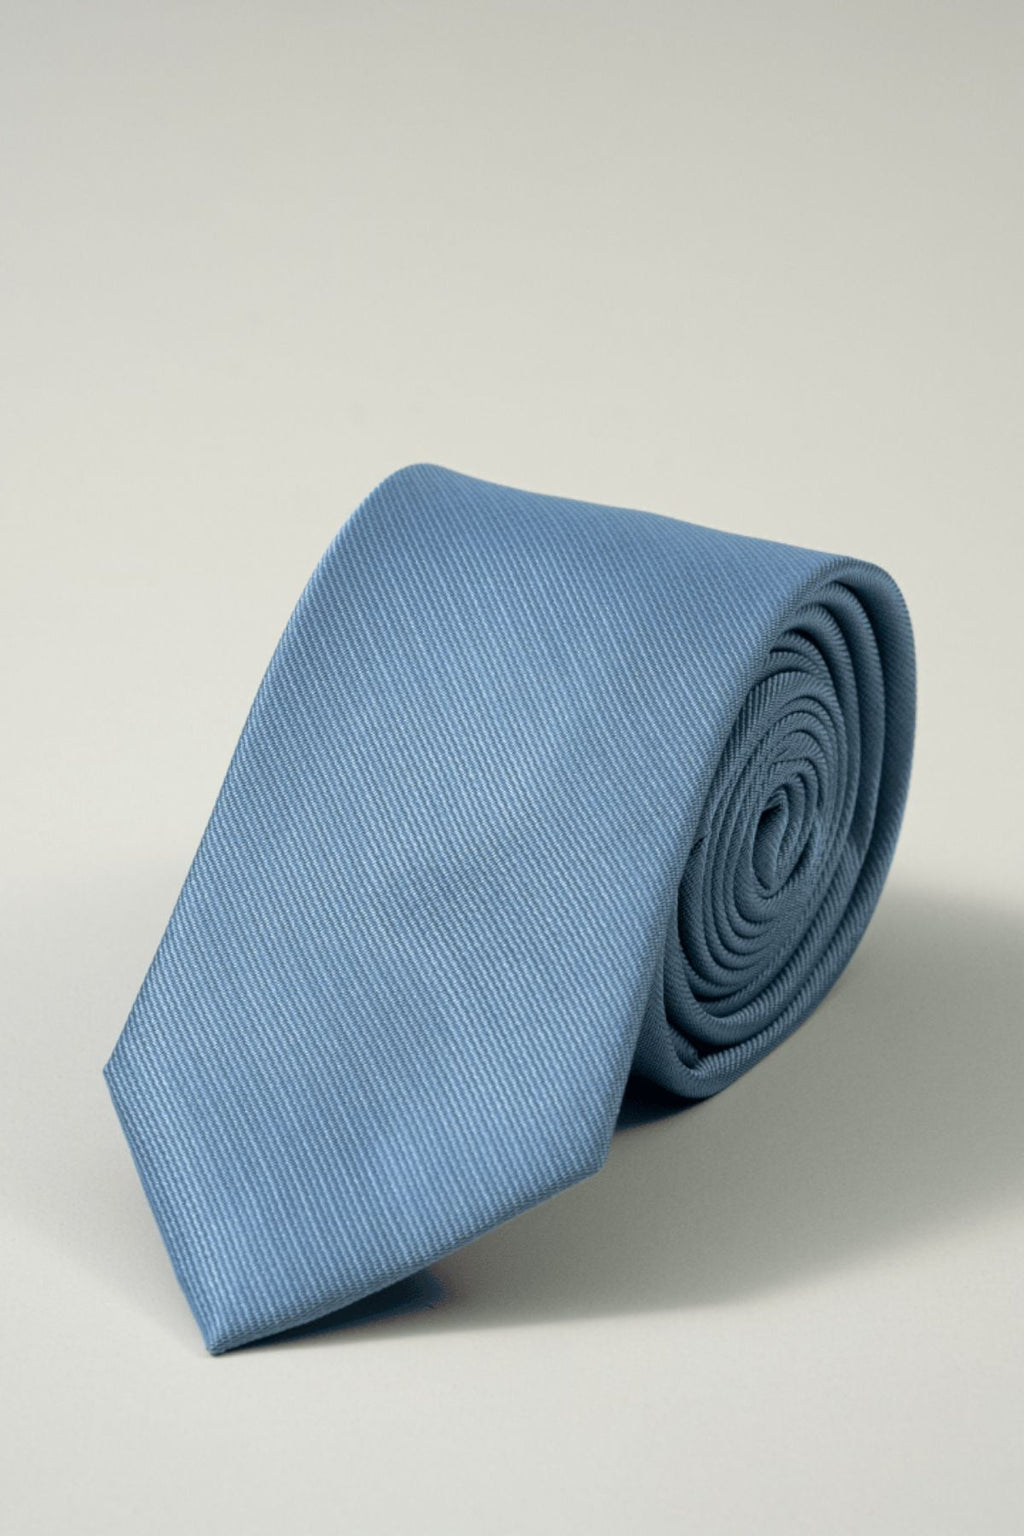 Kaklaraiščiai - paketas (3 vnt.)